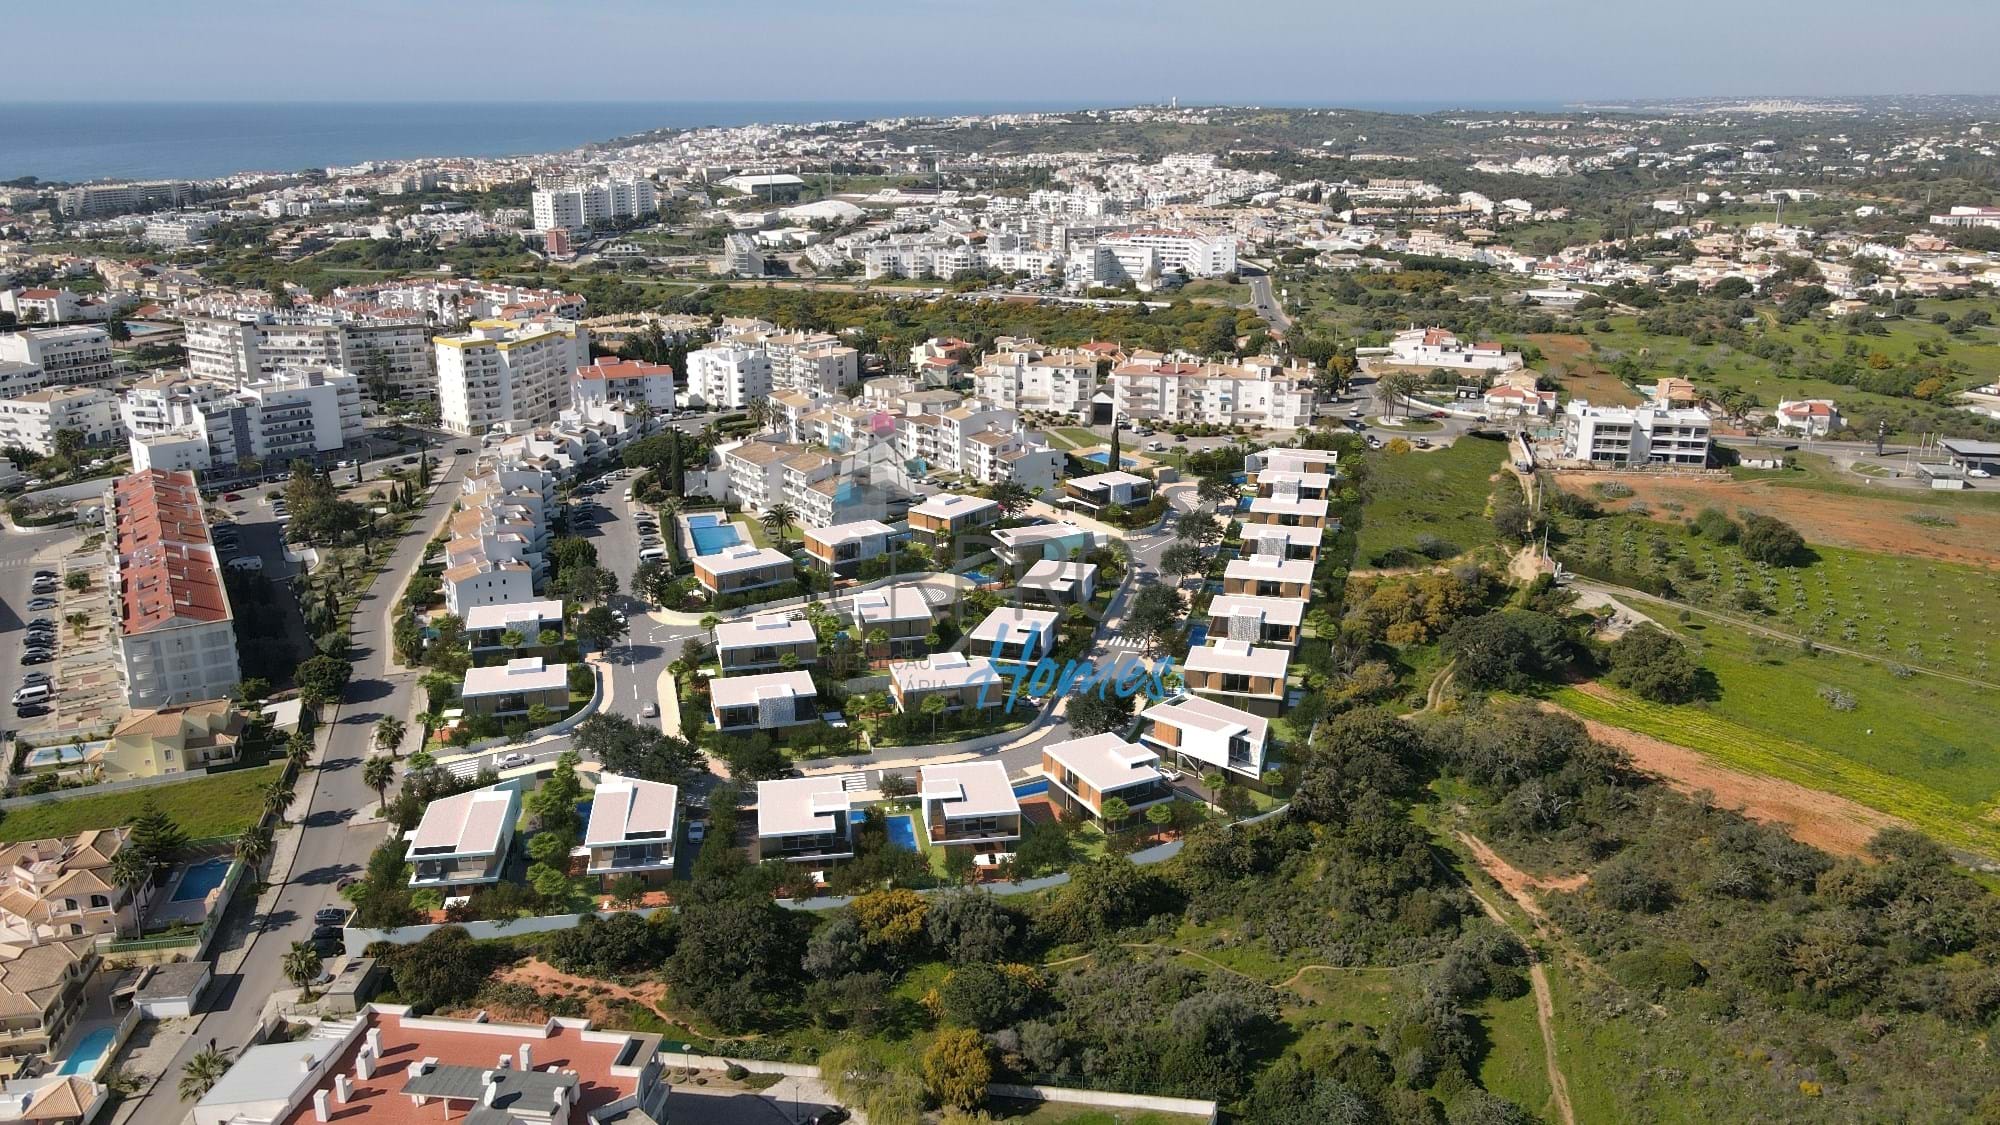 A vendre, terrains à construire dans un nouveau lotissement au centre d'Albufeira. 